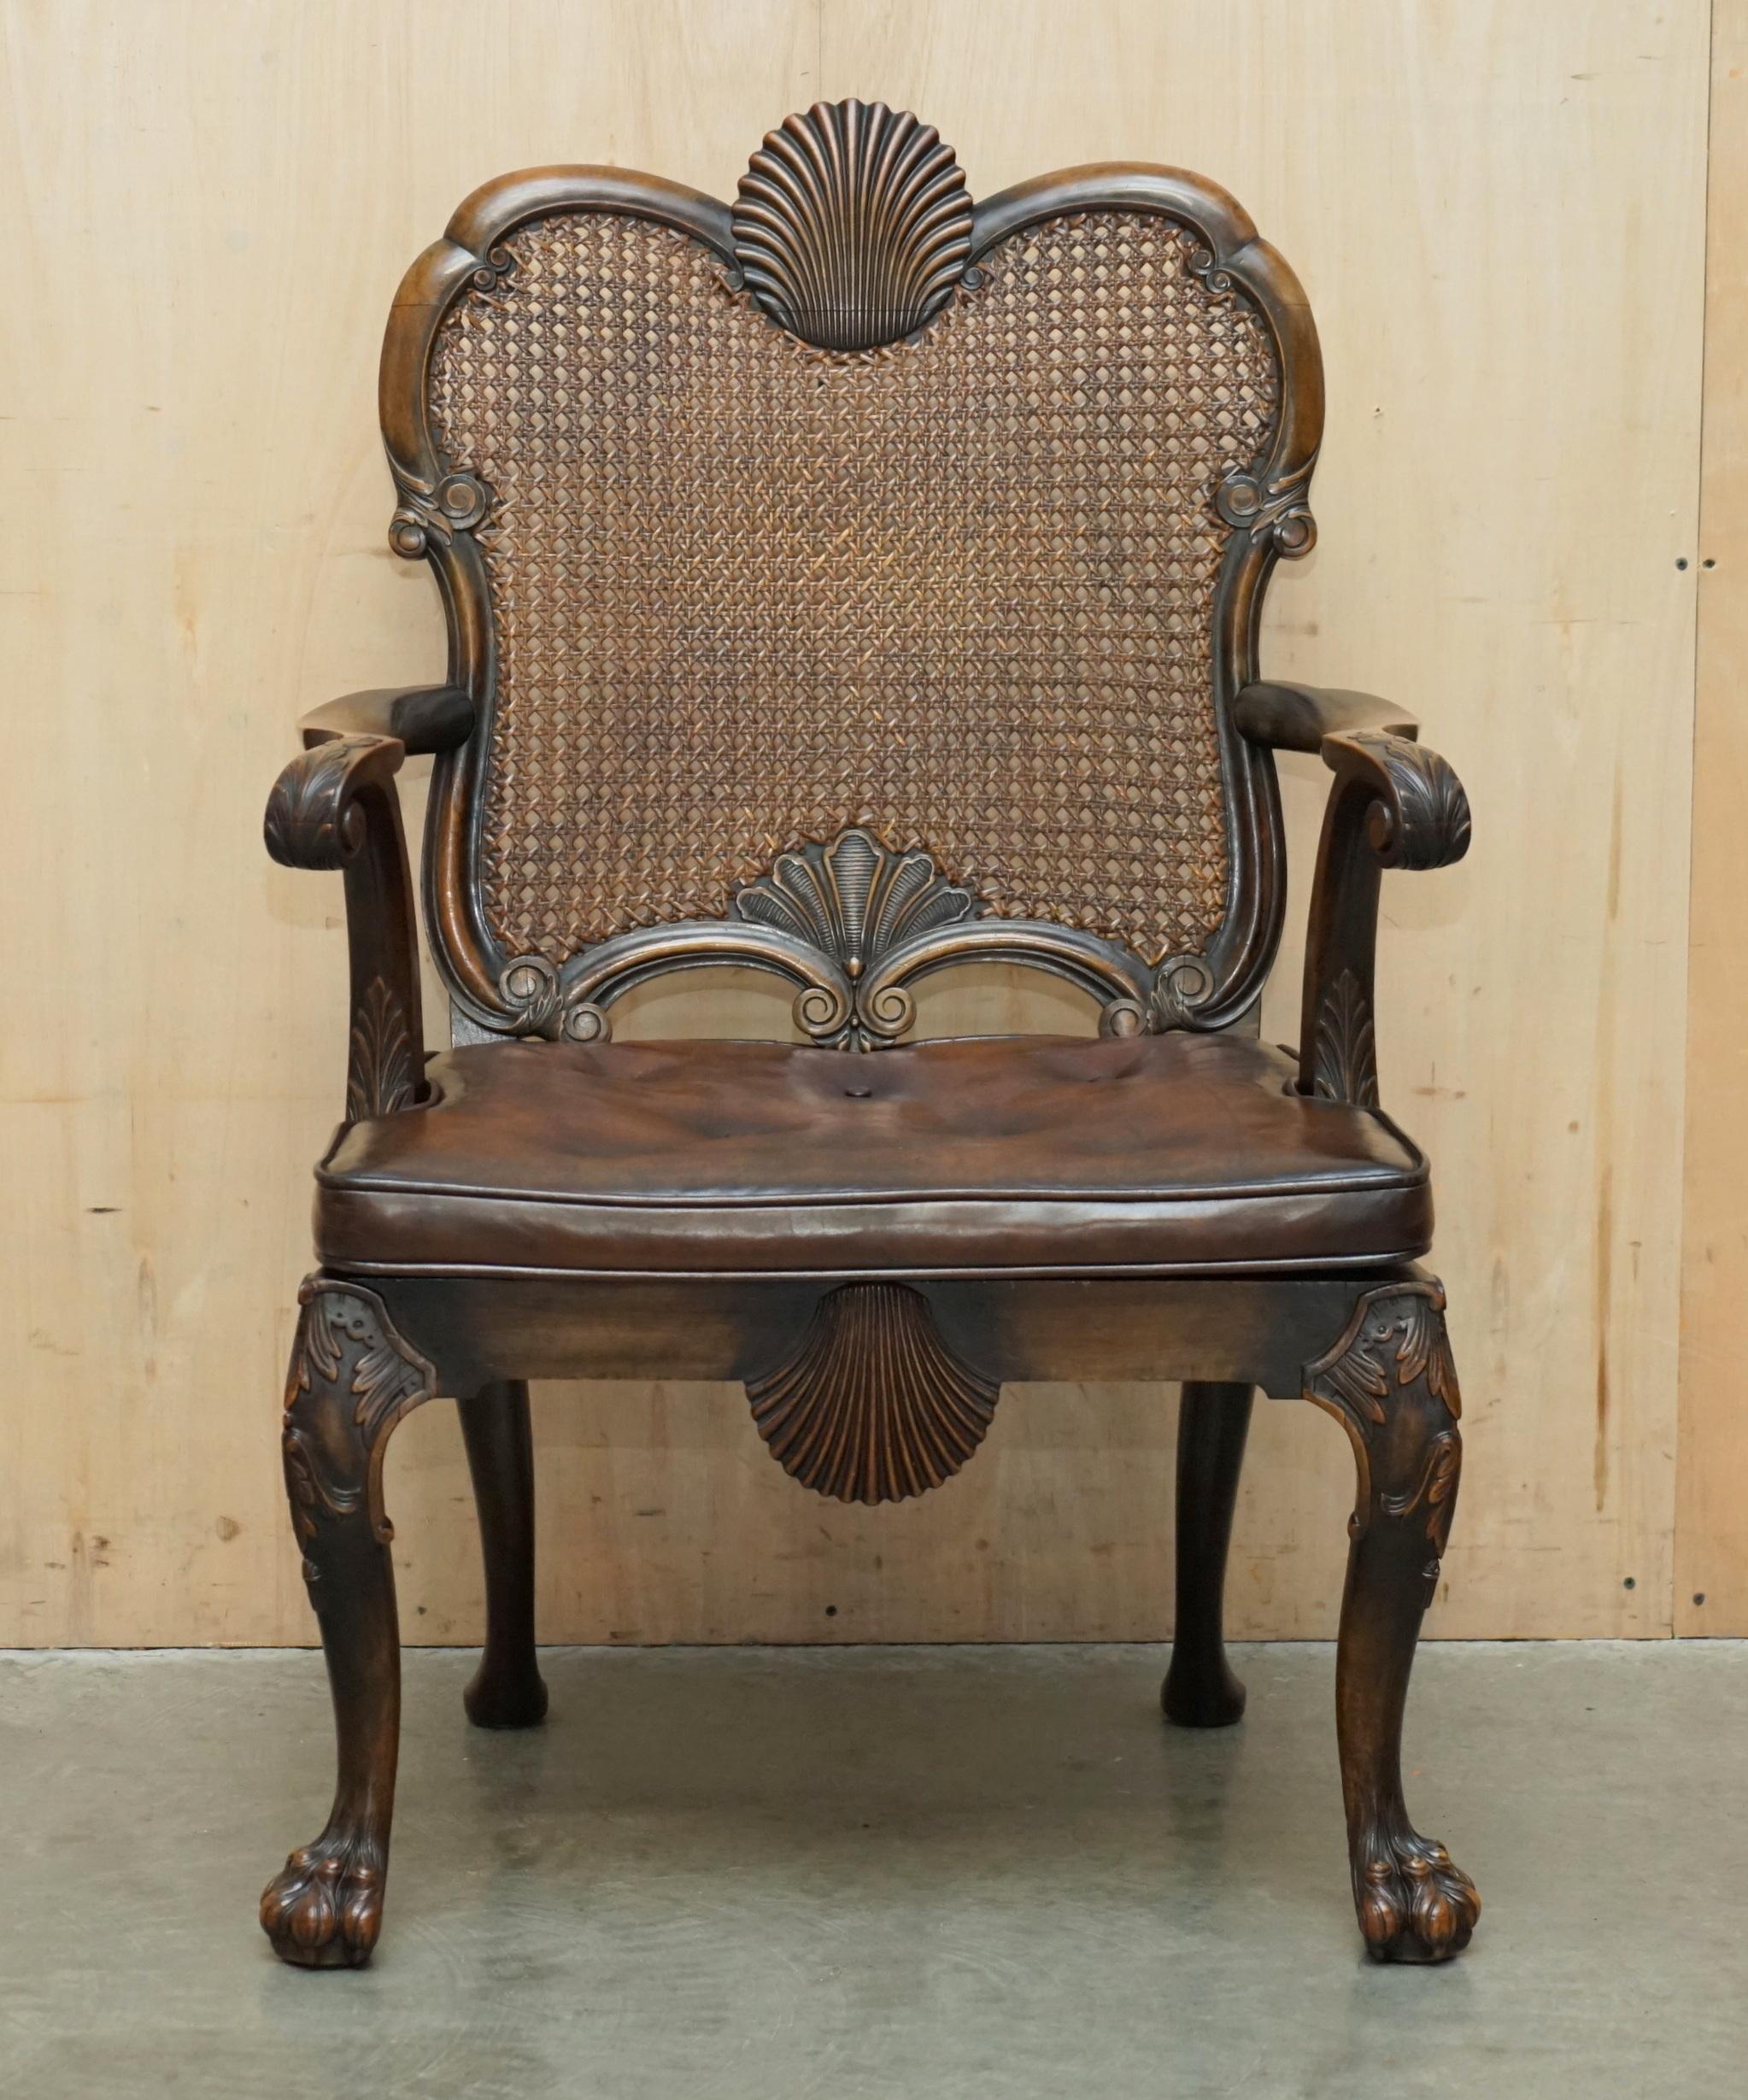 Royal House Antiques

Royal House Antiques freut sich, diesen sehr seltenen und hochgradig sammelwürdigen, um 1880 im Thomas Chippendale-Stil geschnitzten Sessel mit Löwentatzenfüßen und handgefärbtem braunem Leder-Sitzpad zum Verkauf anzubieten